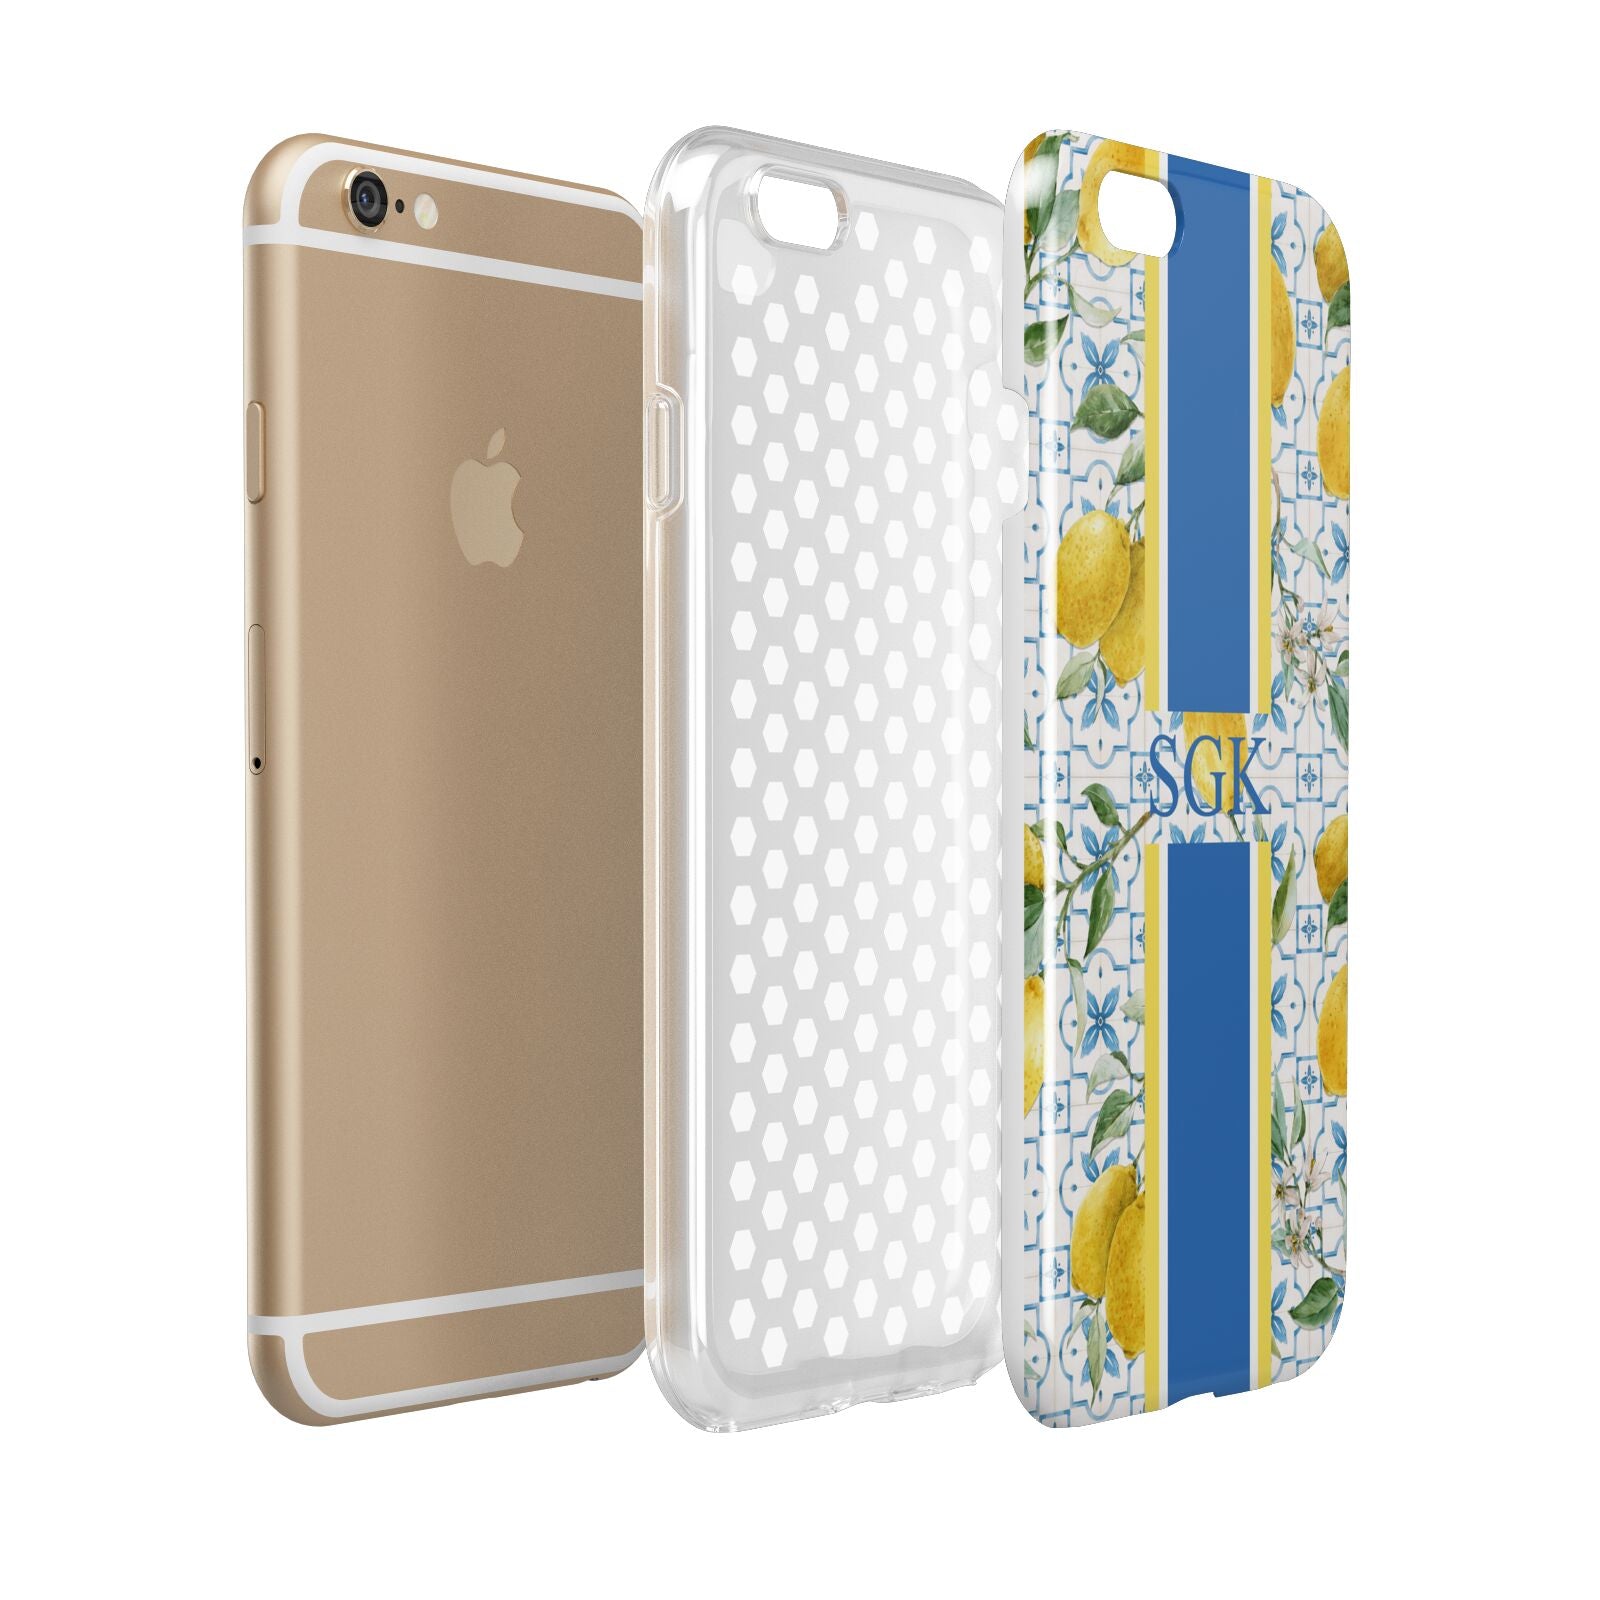 Custom Lemon Apple iPhone 6 3D Tough Case Expanded view